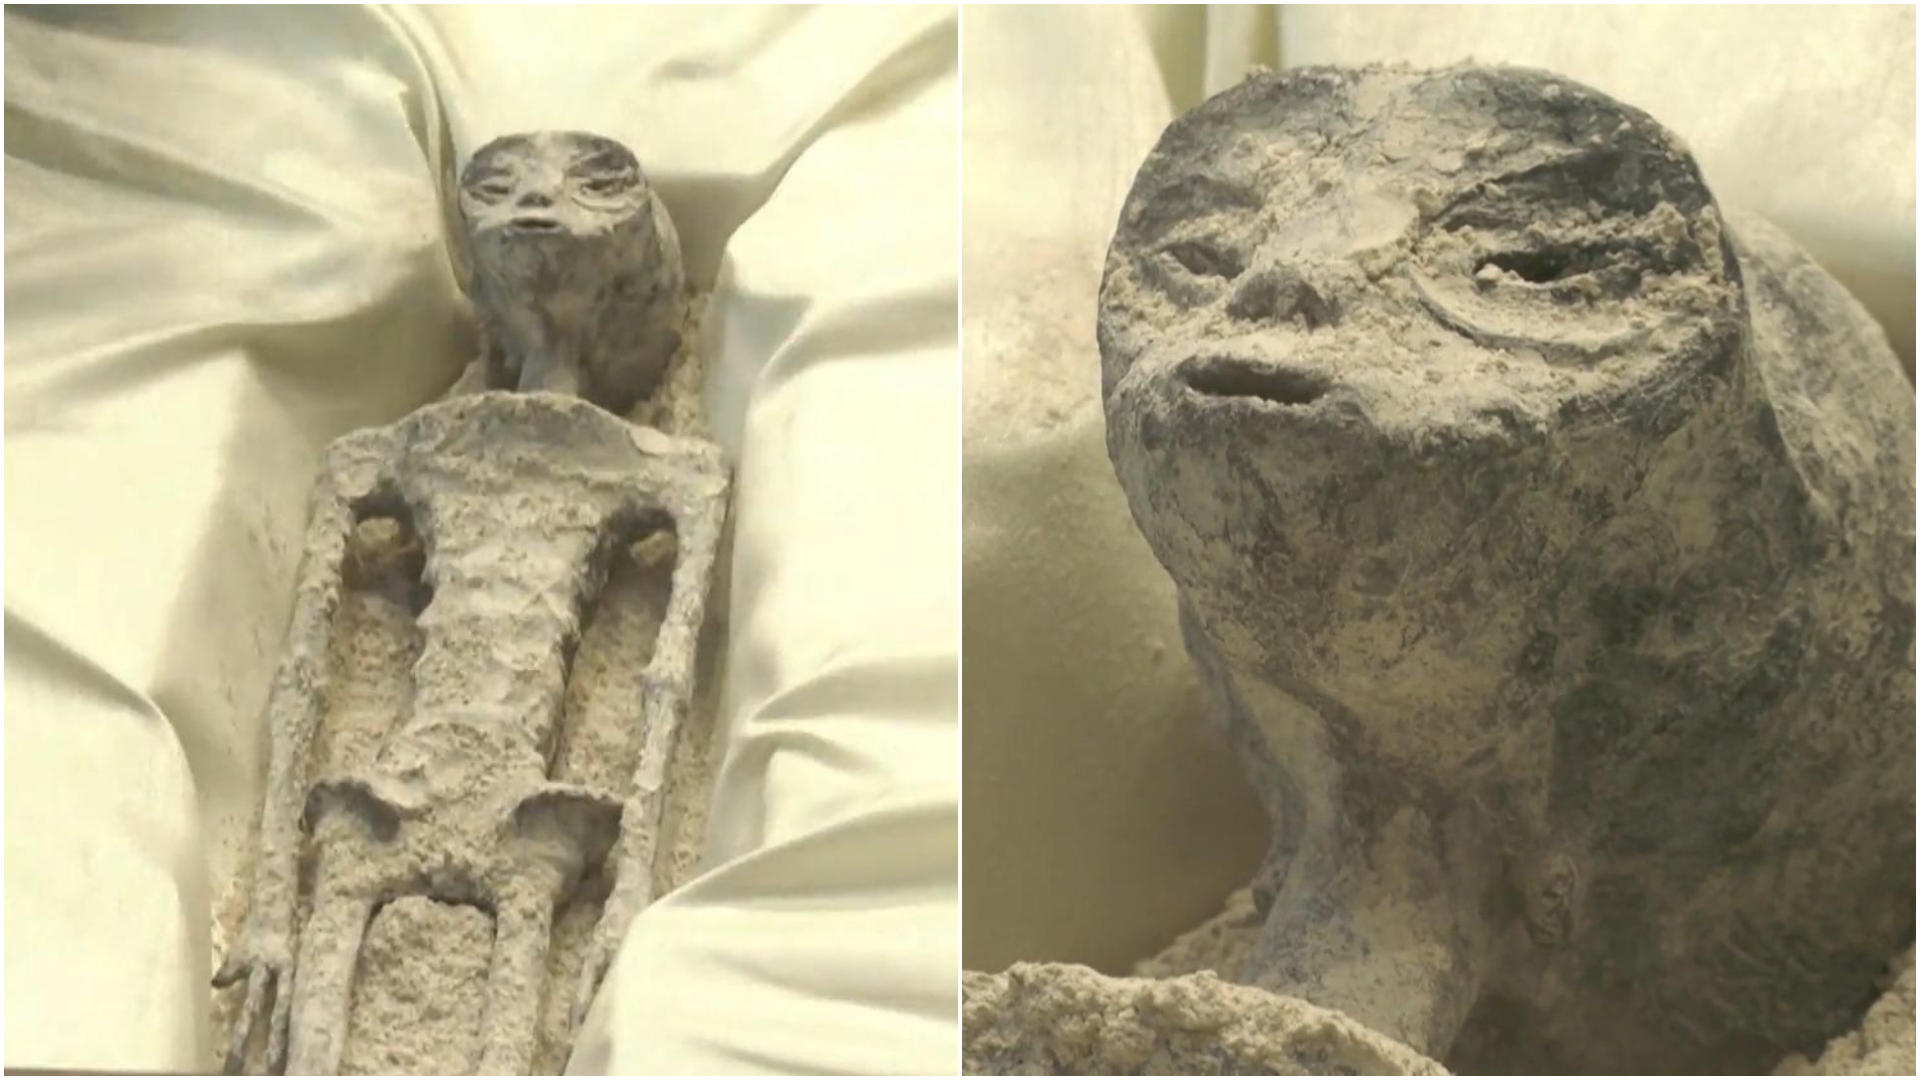 Forscher schwört: DAS ist eine Alien-Mumie! Sie soll über 1.000 Jahre alt sein